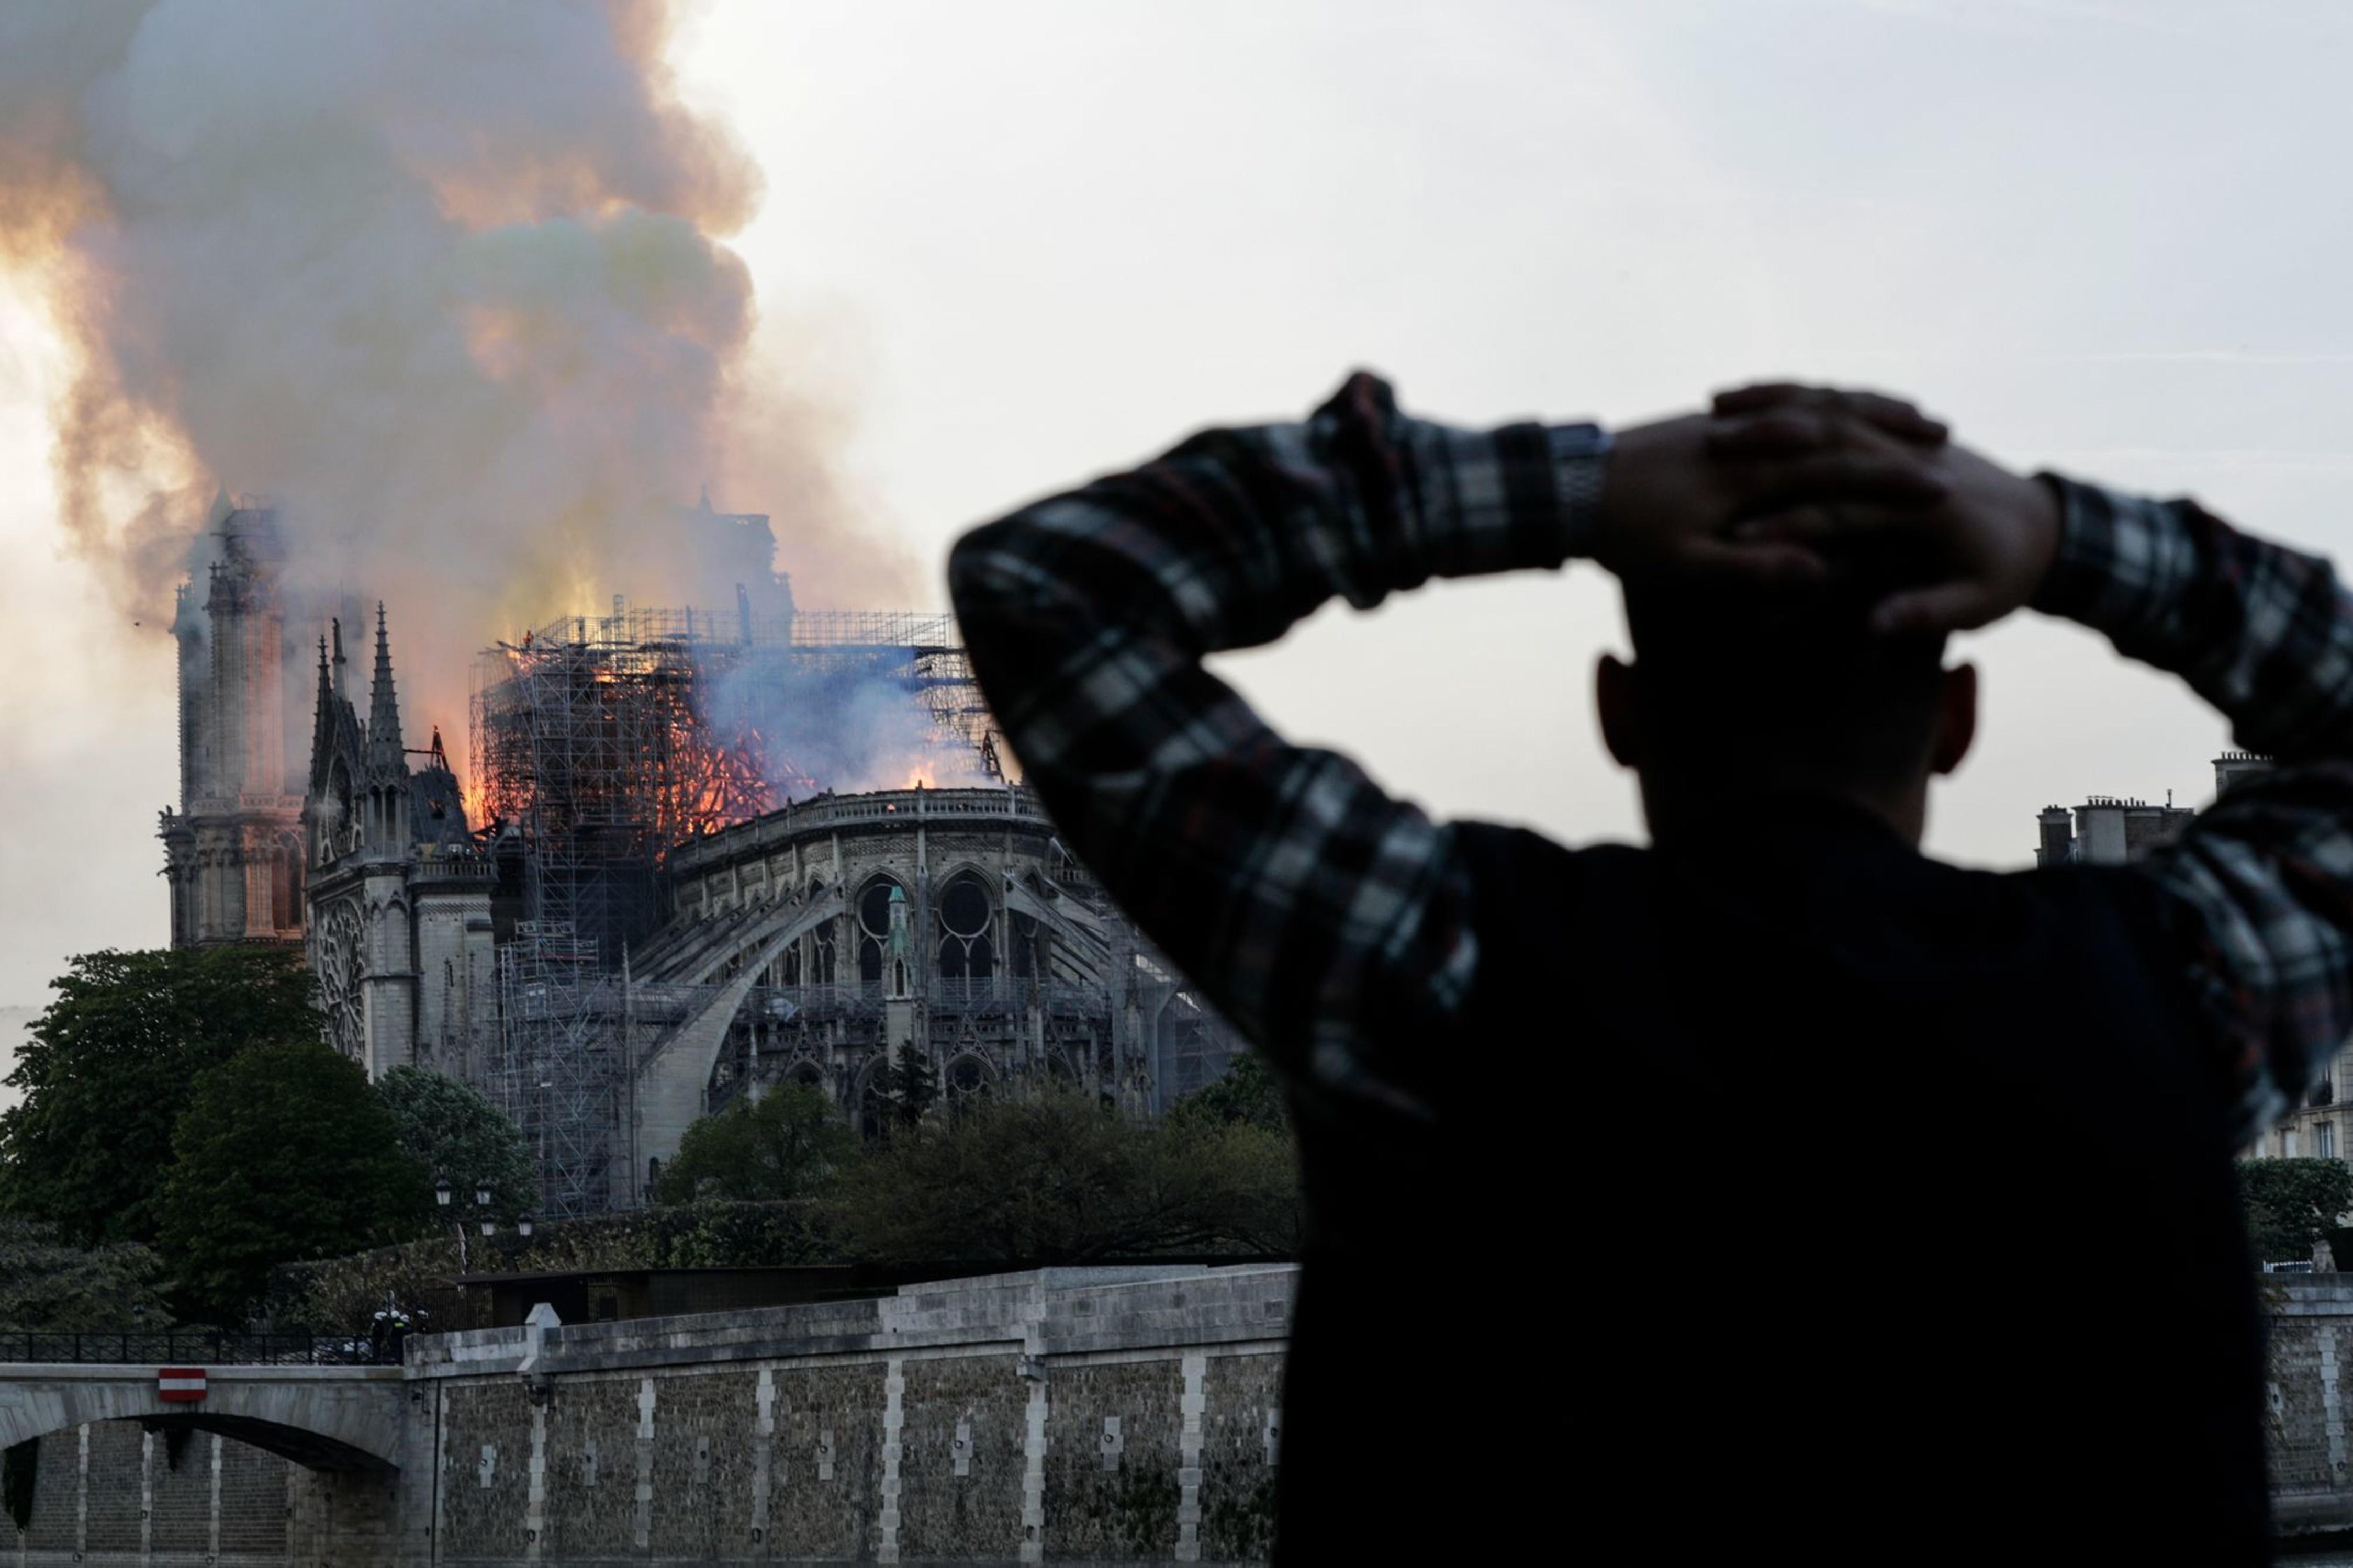 Incendie de Notre-Dame de Paris: ce que l'on sait